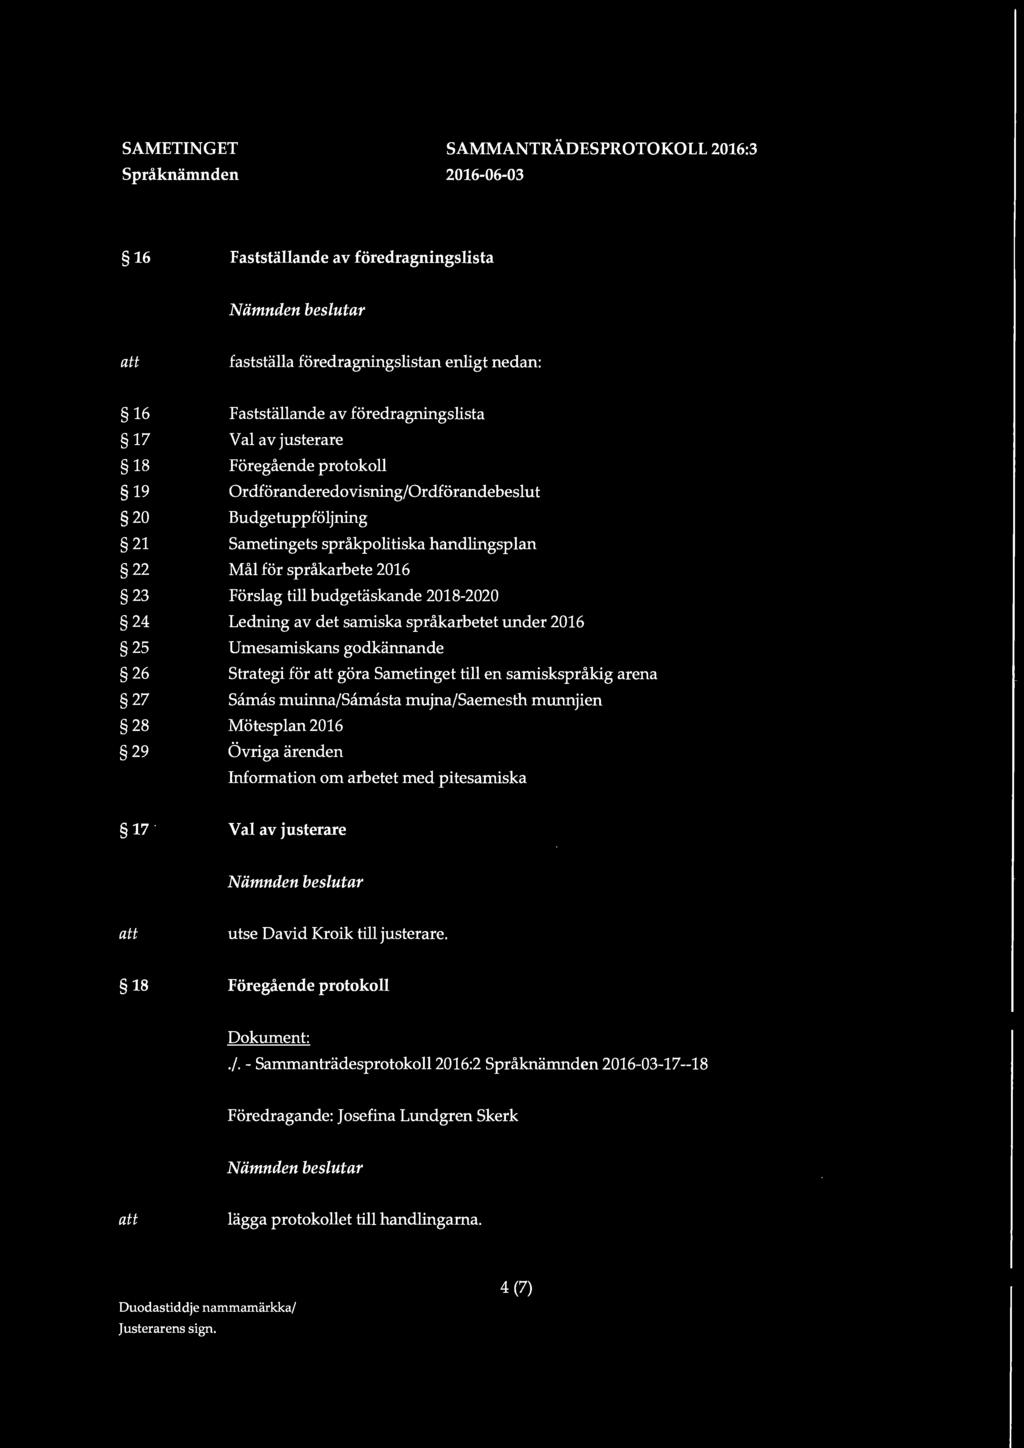 samiska språkarbetet under 2016 25 Umesamiskans godkännande 26 Strategi för göra Sametinget till en samiskspråkig arena 27 Samas muinna/samasta mujna/saemesth munnjien 28 Mötesplan 2016 29